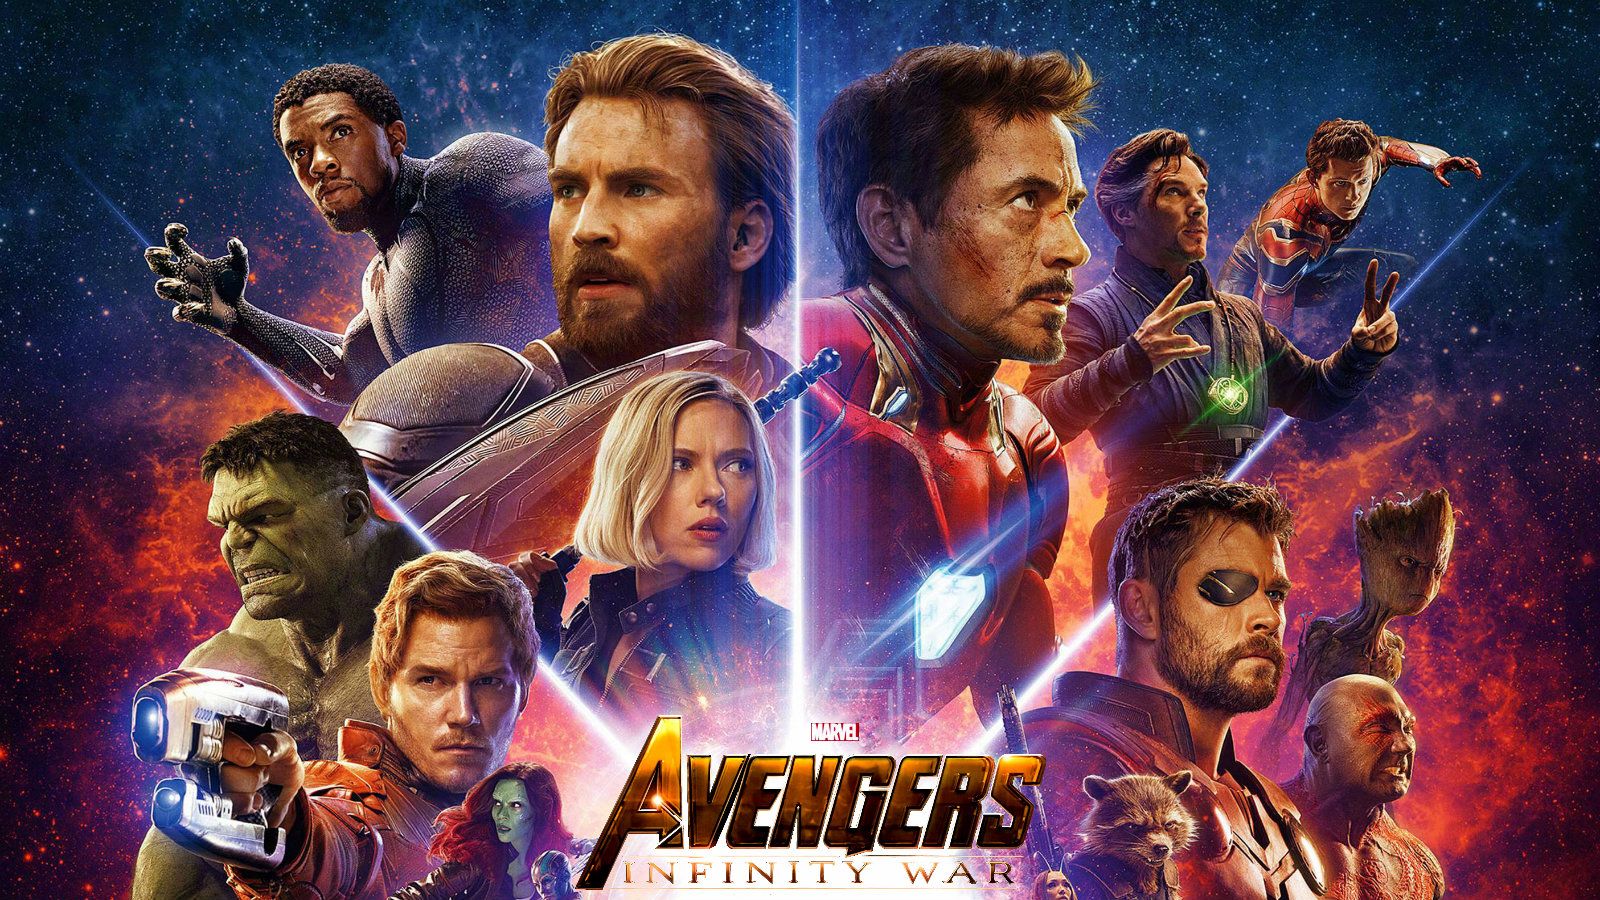 Avengers Infinity War Final Battle Wallpapers - Wallpaper Cave